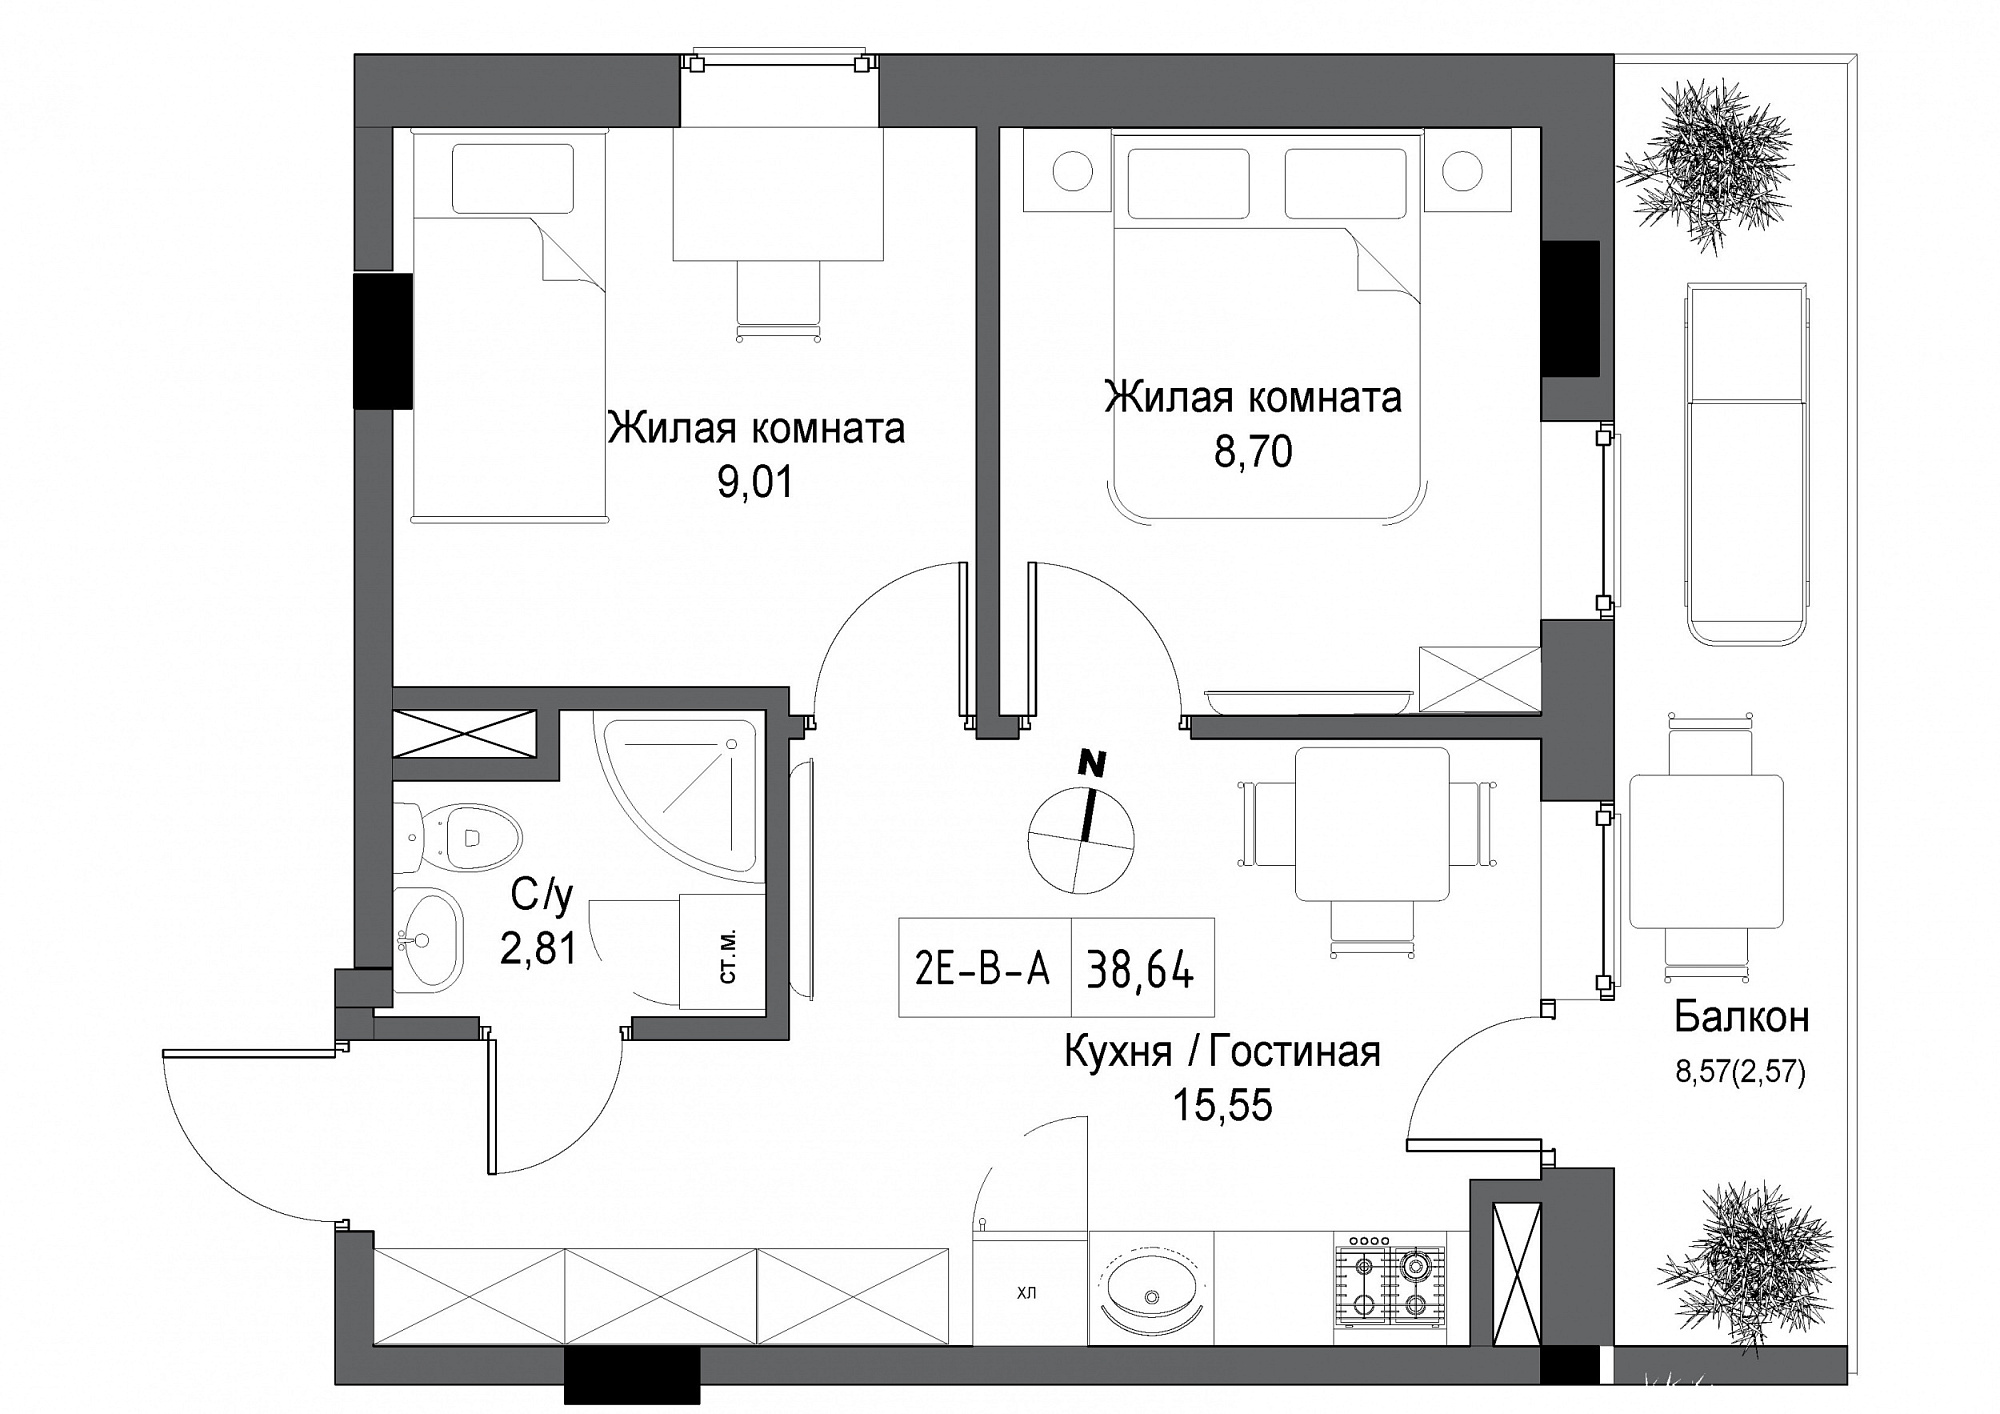 Планировка 2-к квартира площей 38.64м2, UM-004-05/0005.